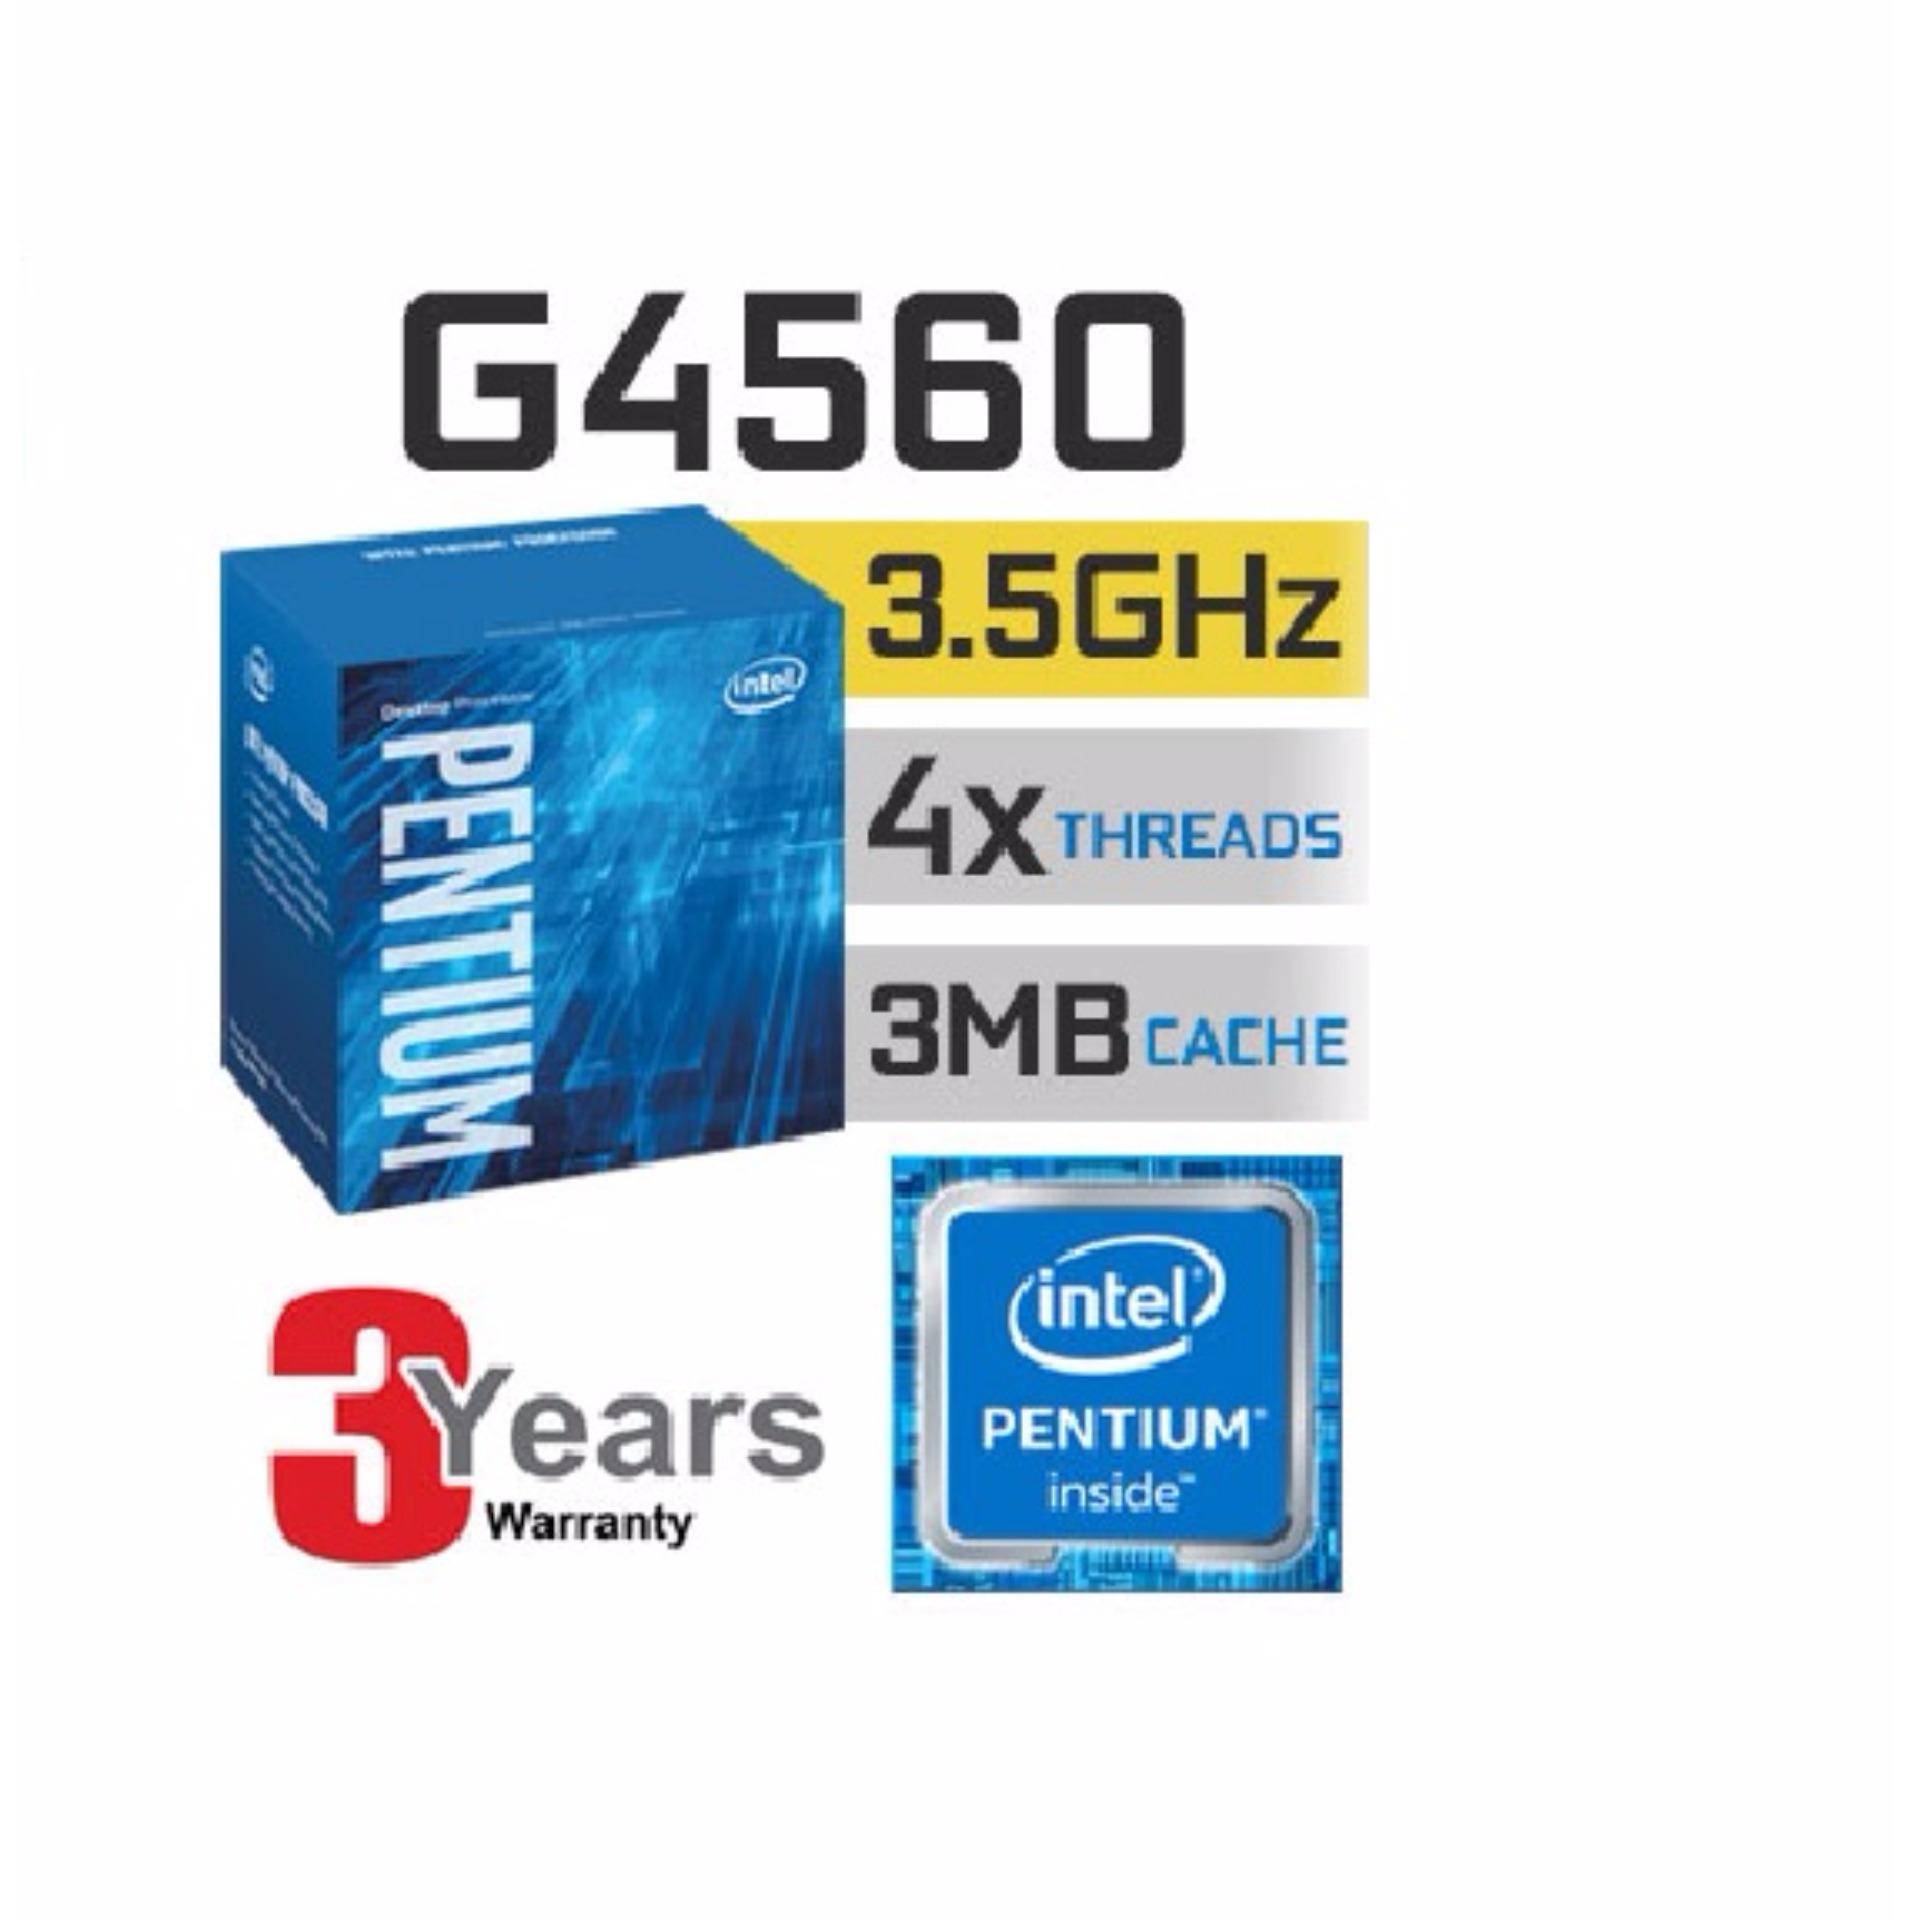 Bộ vi xử lý Intel CPU G4560 3.5GHz (2 lõi, 4 luồng) - HÀNG PHÂN PHỐI CHÍNH THỨC